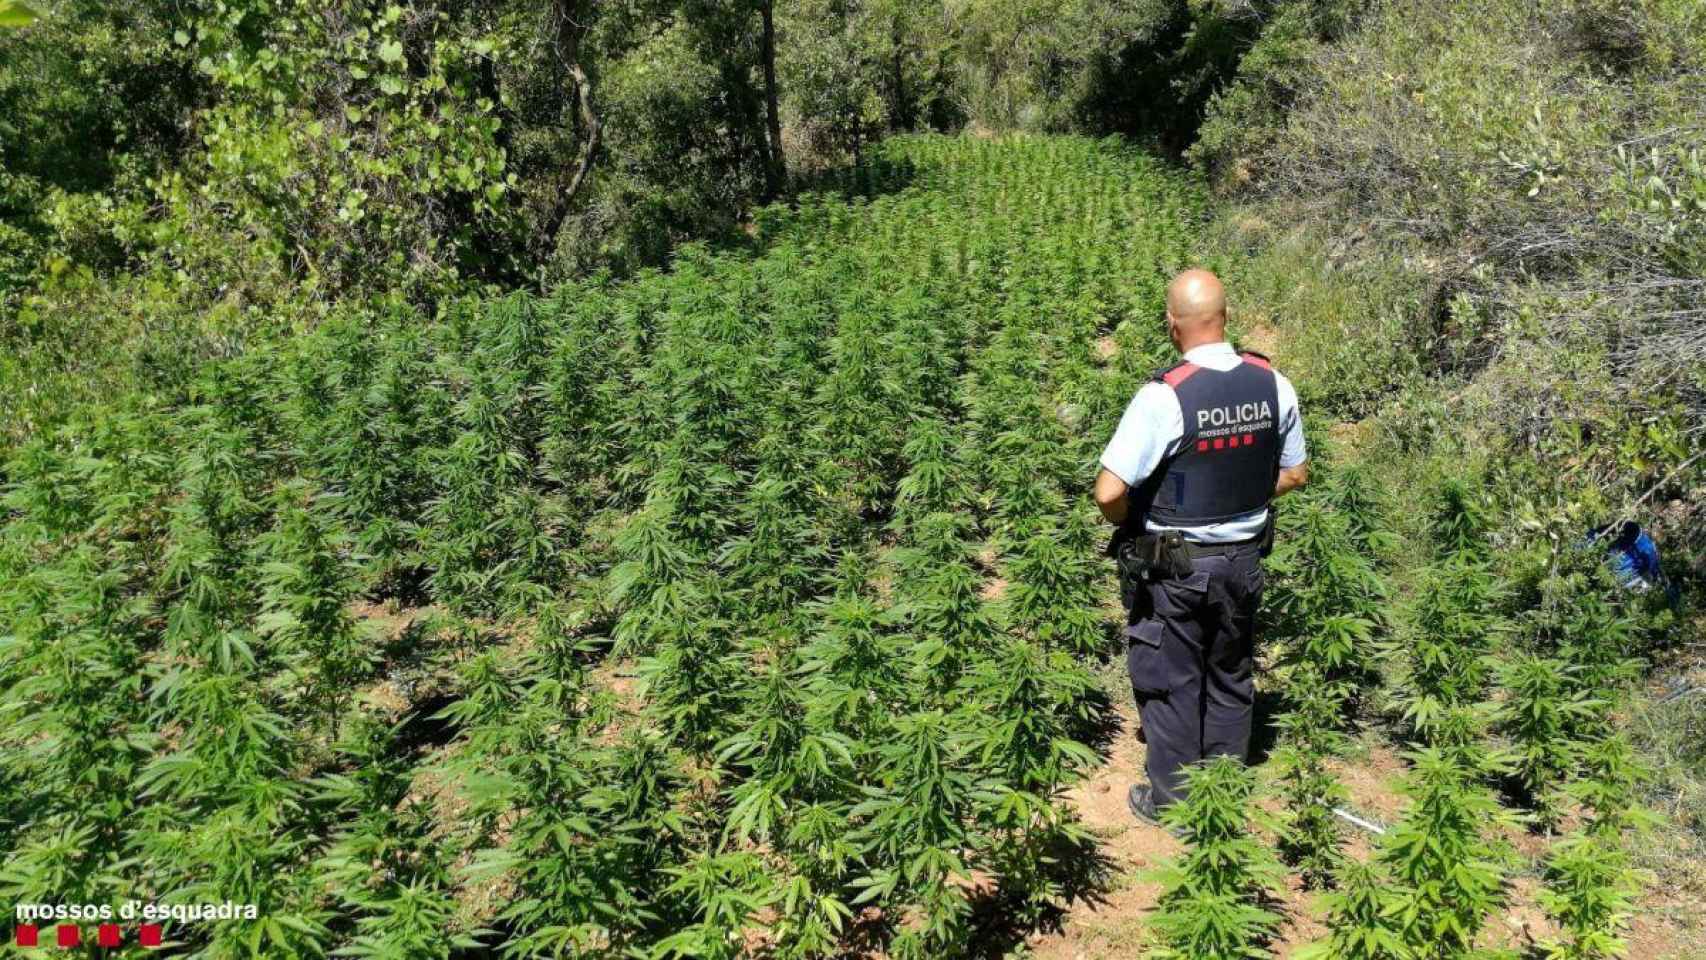 Imagen de la plantación de marihuana encontrada en Querol / MOSSOS D'ESQUADRA